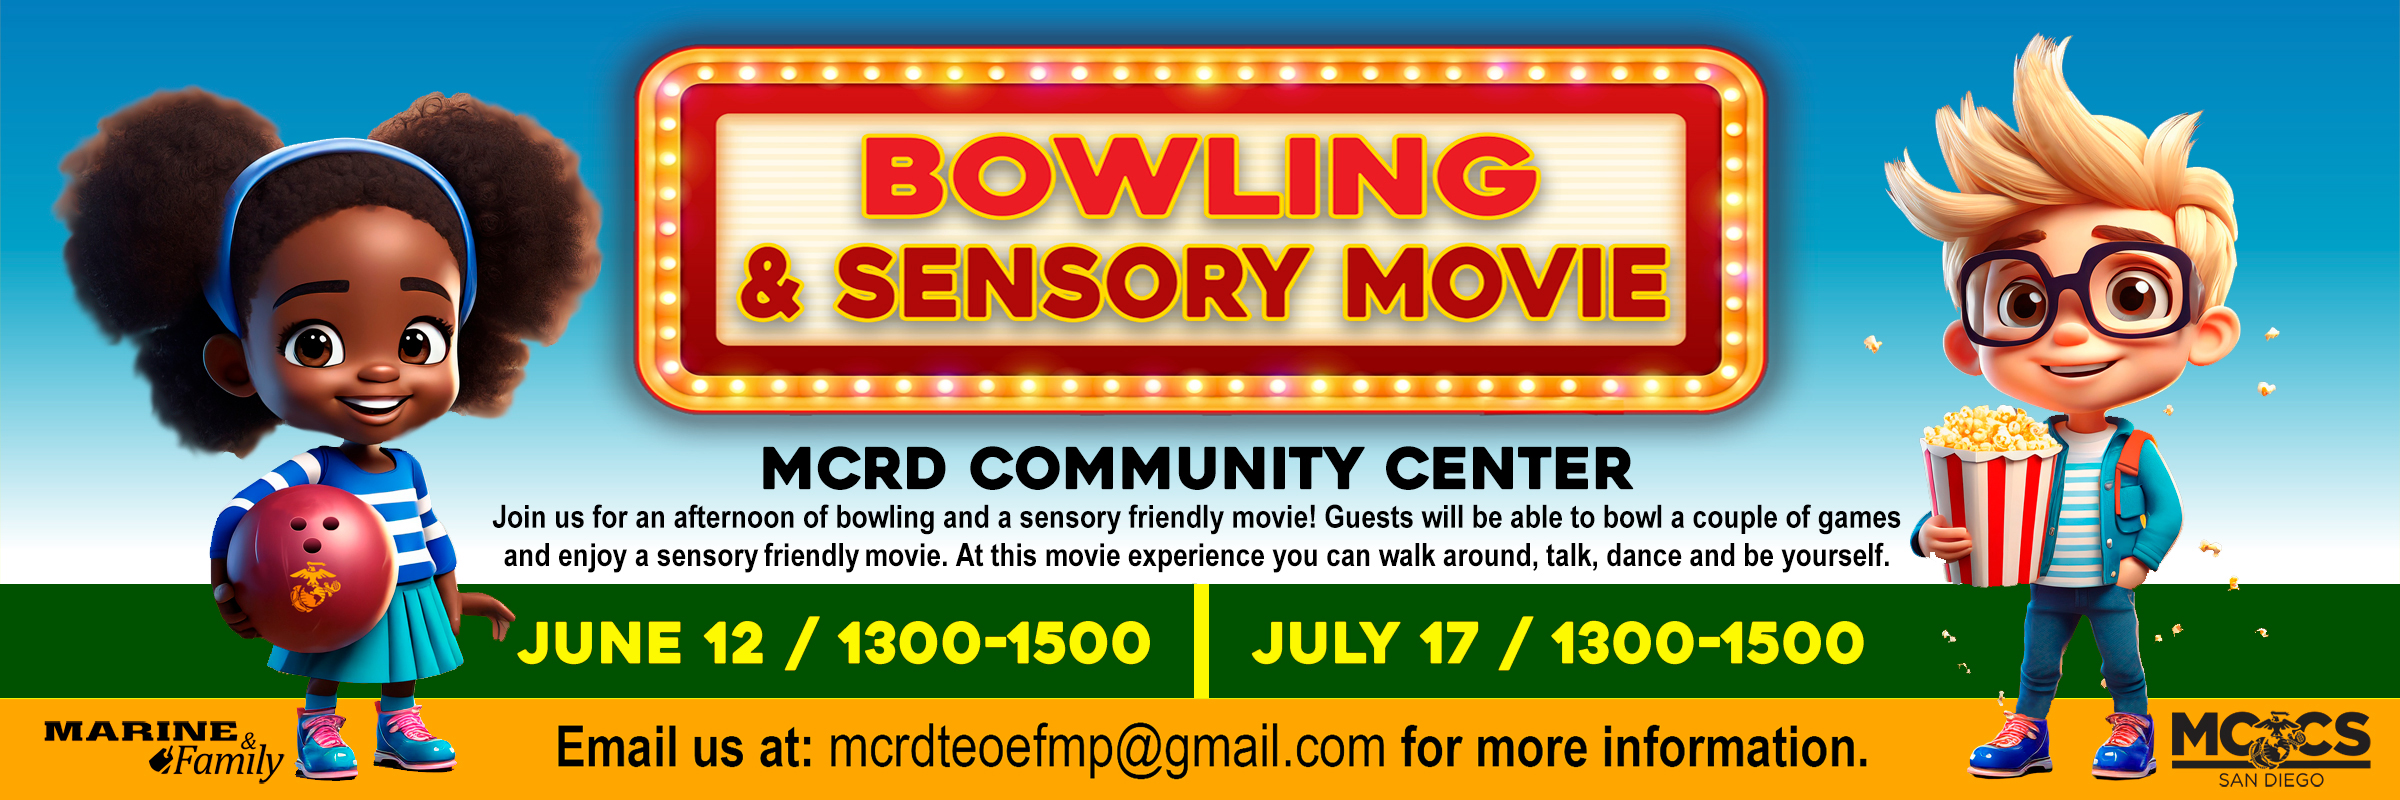 MCRD-Web-Slide_Sensory-Movie-&-Bowling.jpg